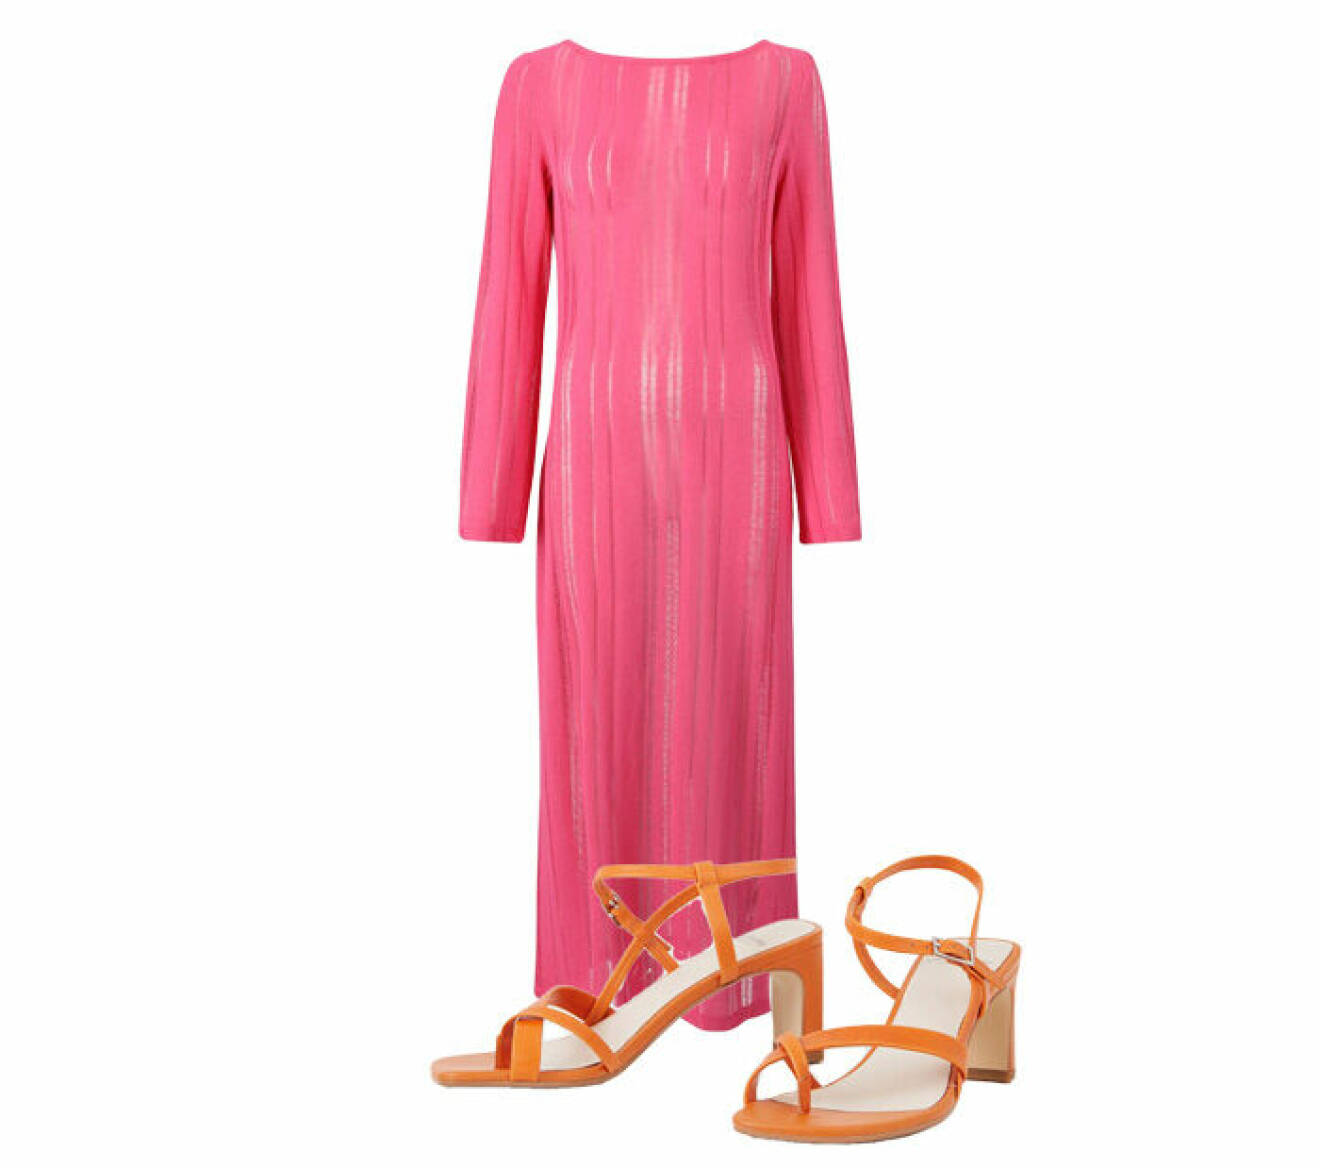 midiklänning i rosa nyans att bära med remsandaler i orange nyans från Vagabond